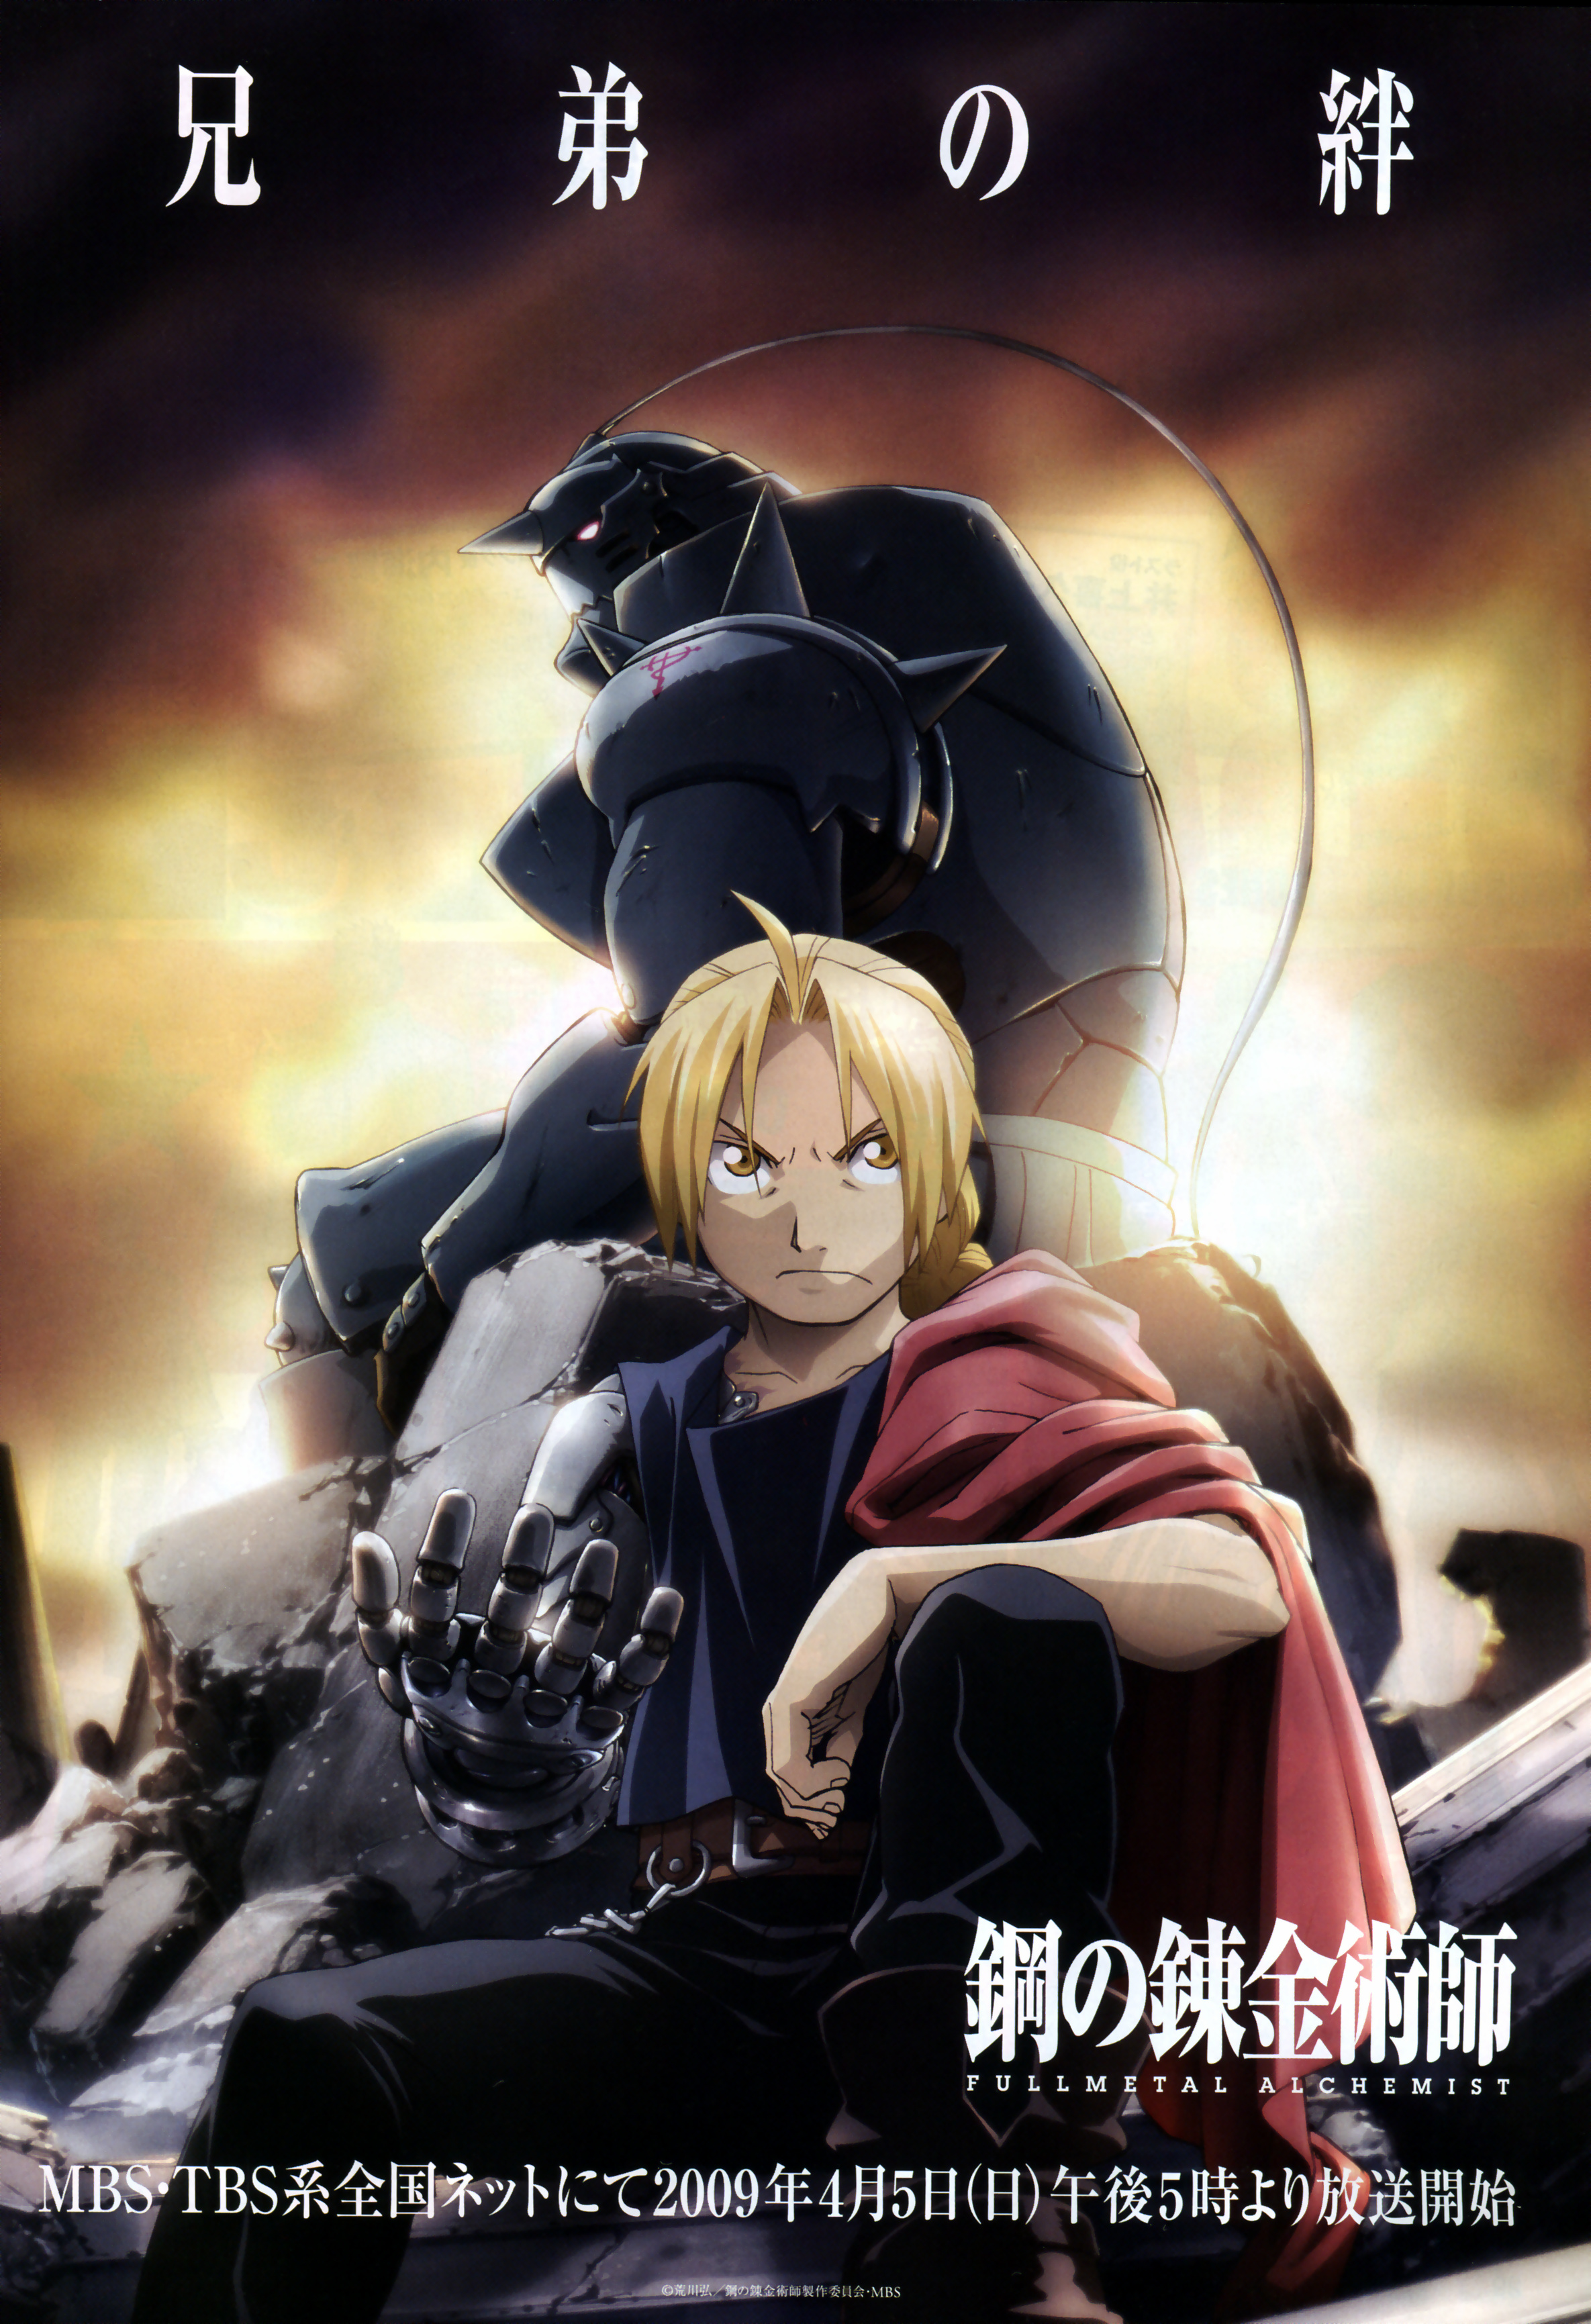 Anime 2370x3462 anime Full Metal Alchemist anime boys